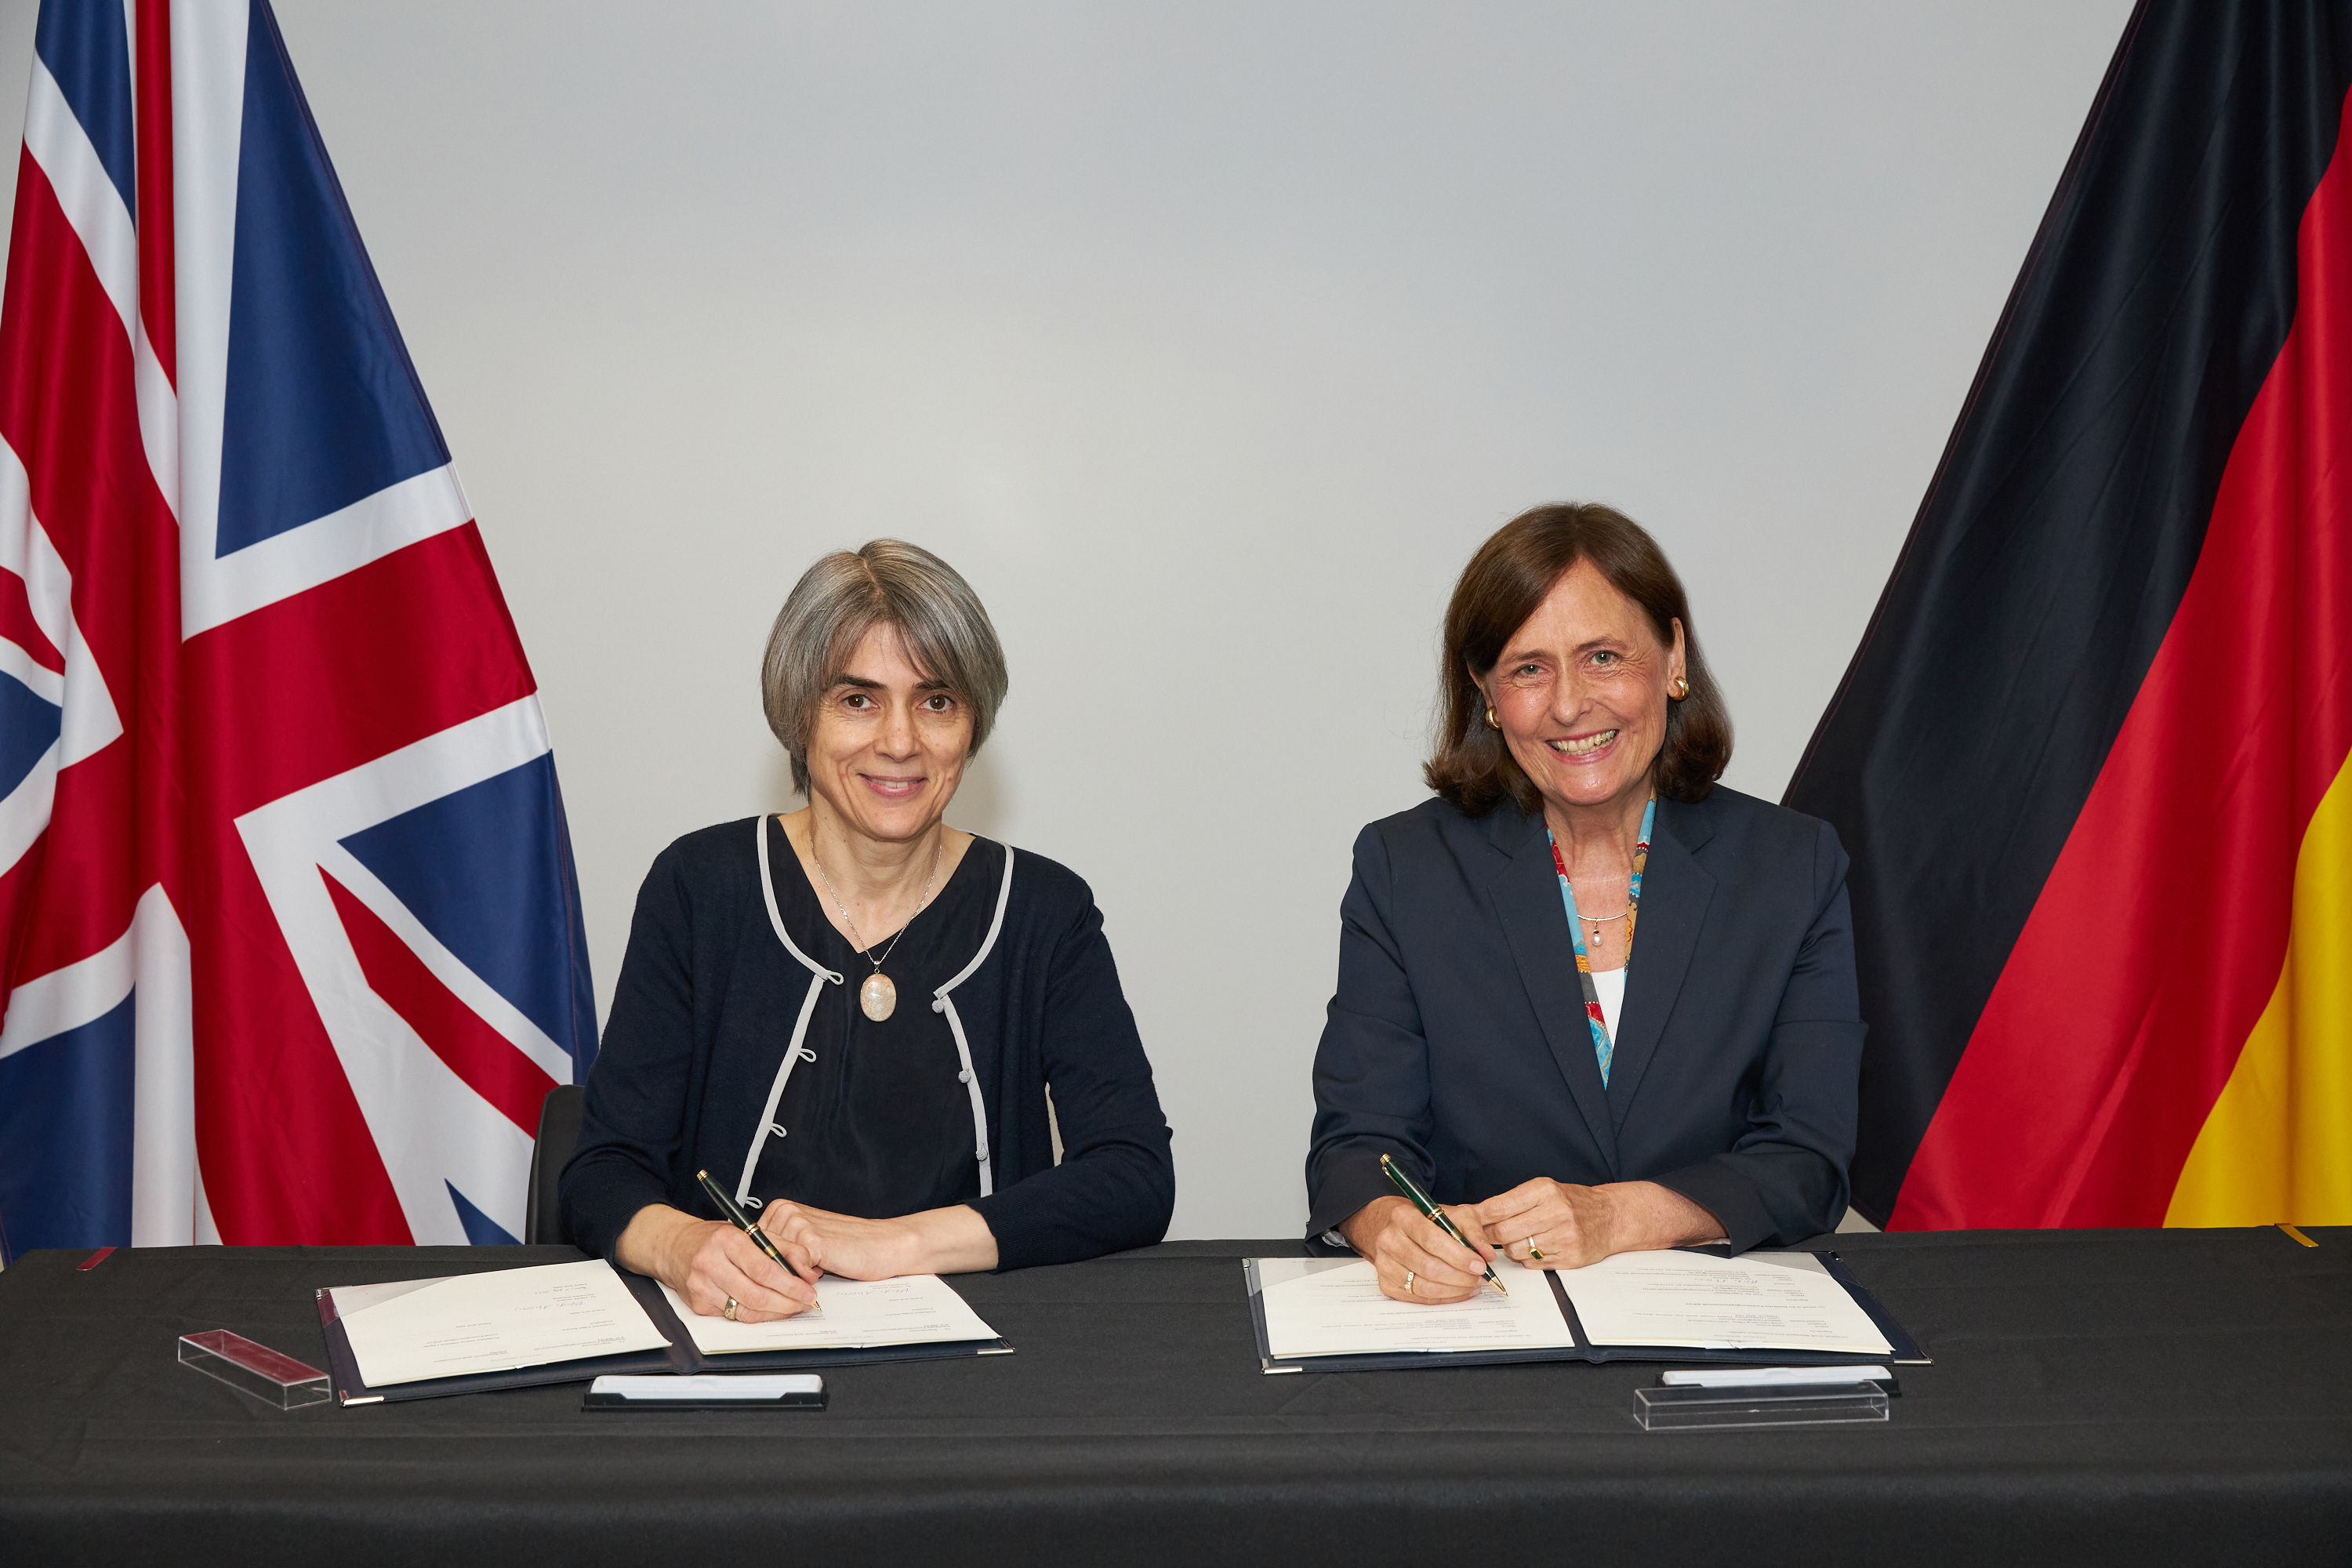 President of the Deutsche Forschungsgemeinschaft (DFG), Professor Dr. Katja Becker (right) and UKRI Chief Executive Dame Ottoline Leyser (left) sign a Memorandum of Understanding in London.